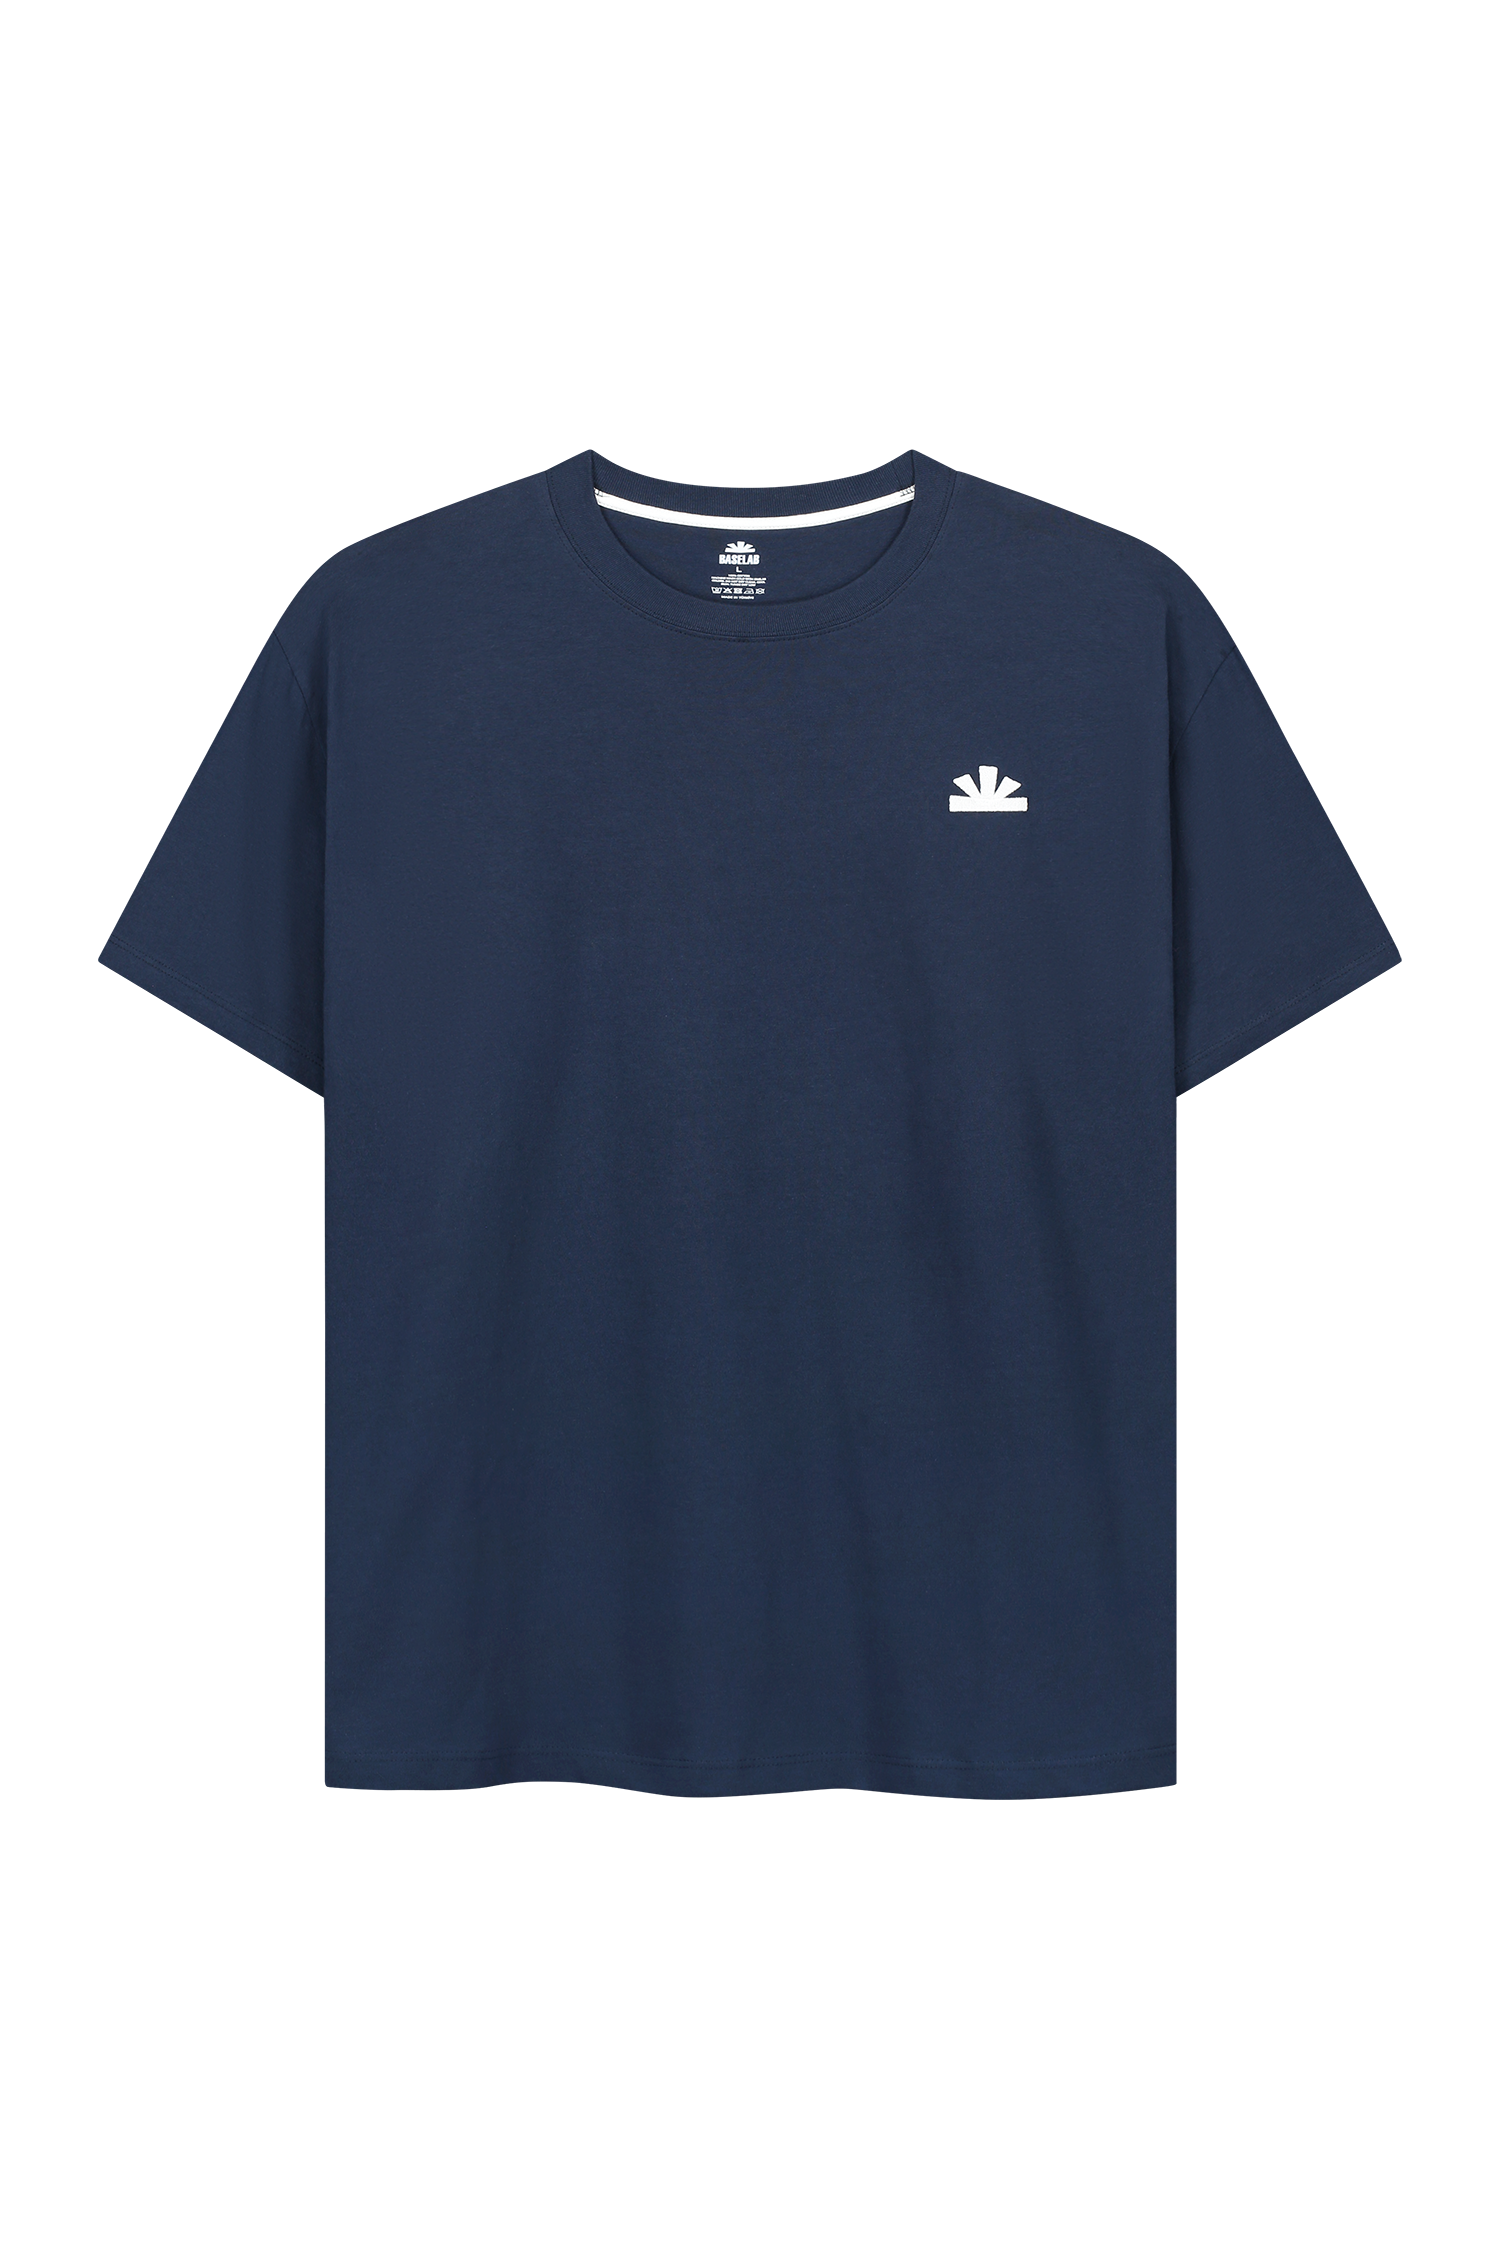 Sunrise T-Shirt Blue